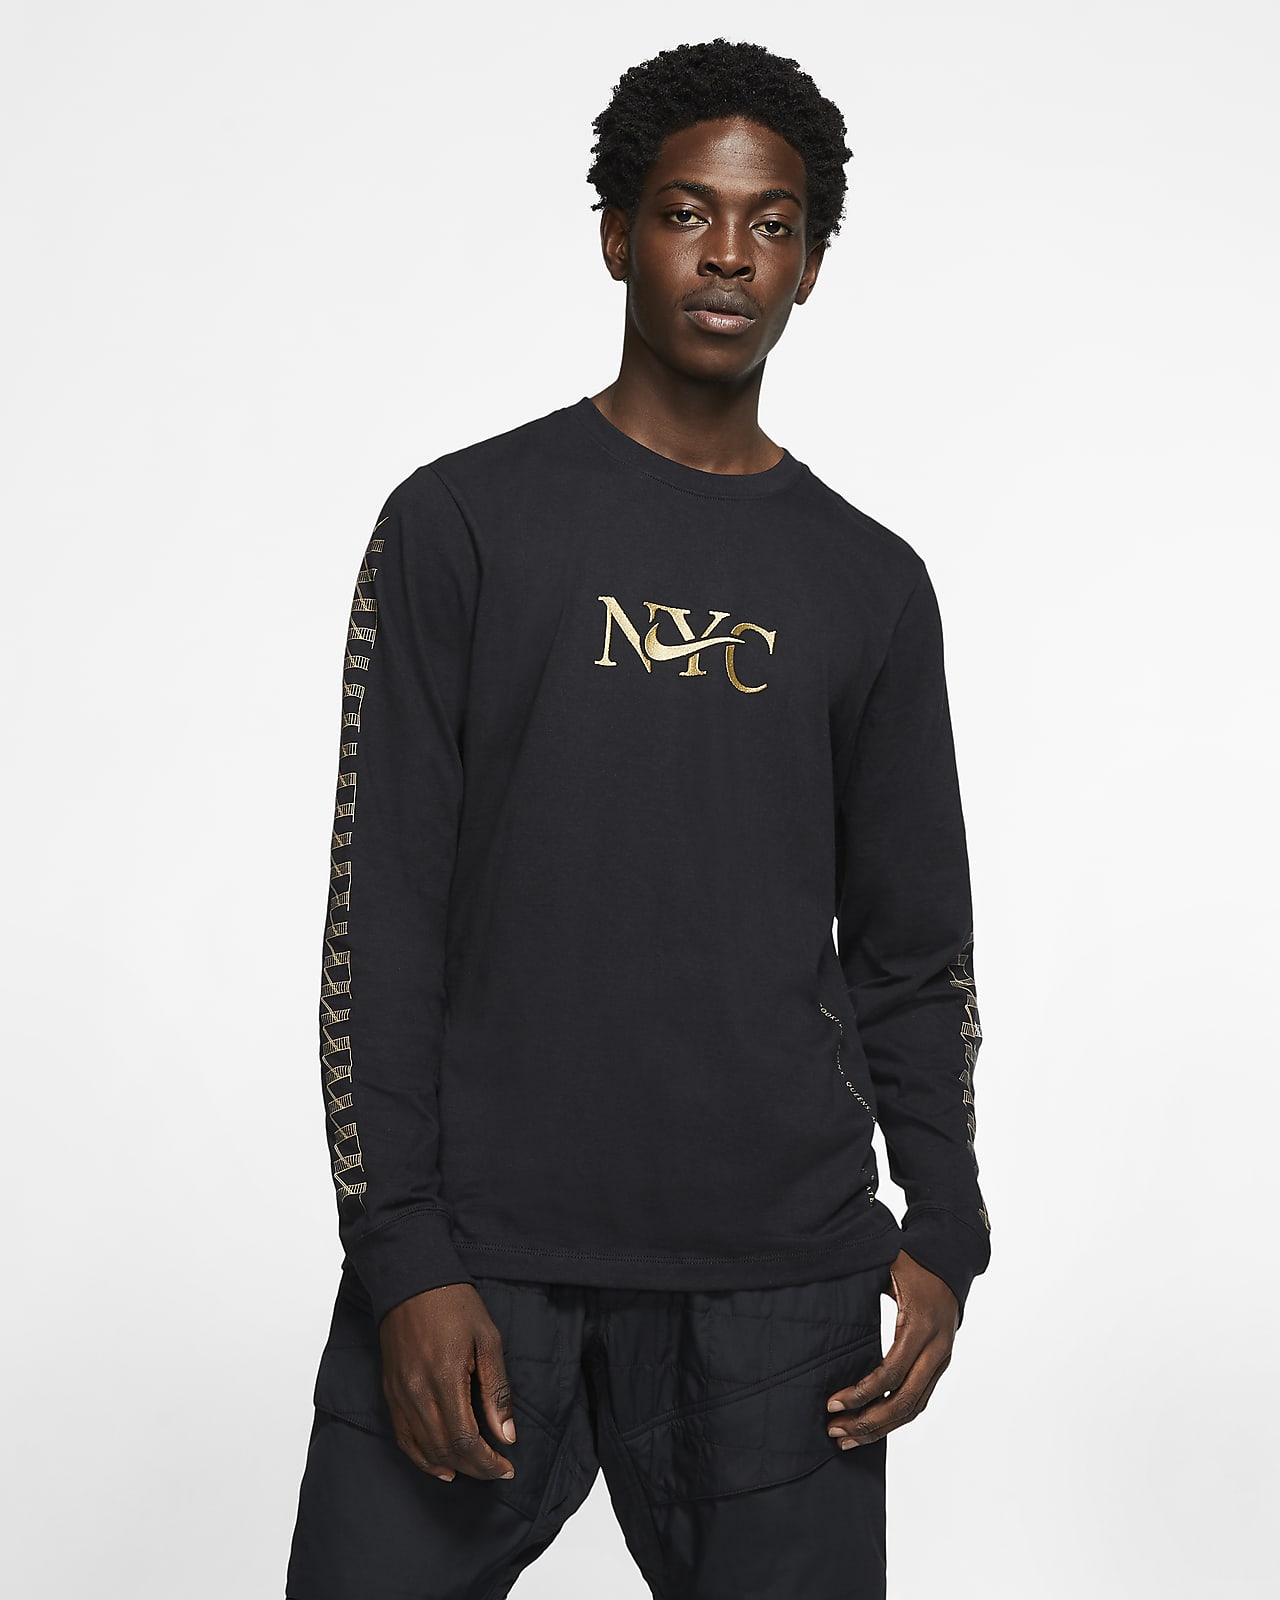 Nike Sportswear NYC Men's Long-Sleeve T 